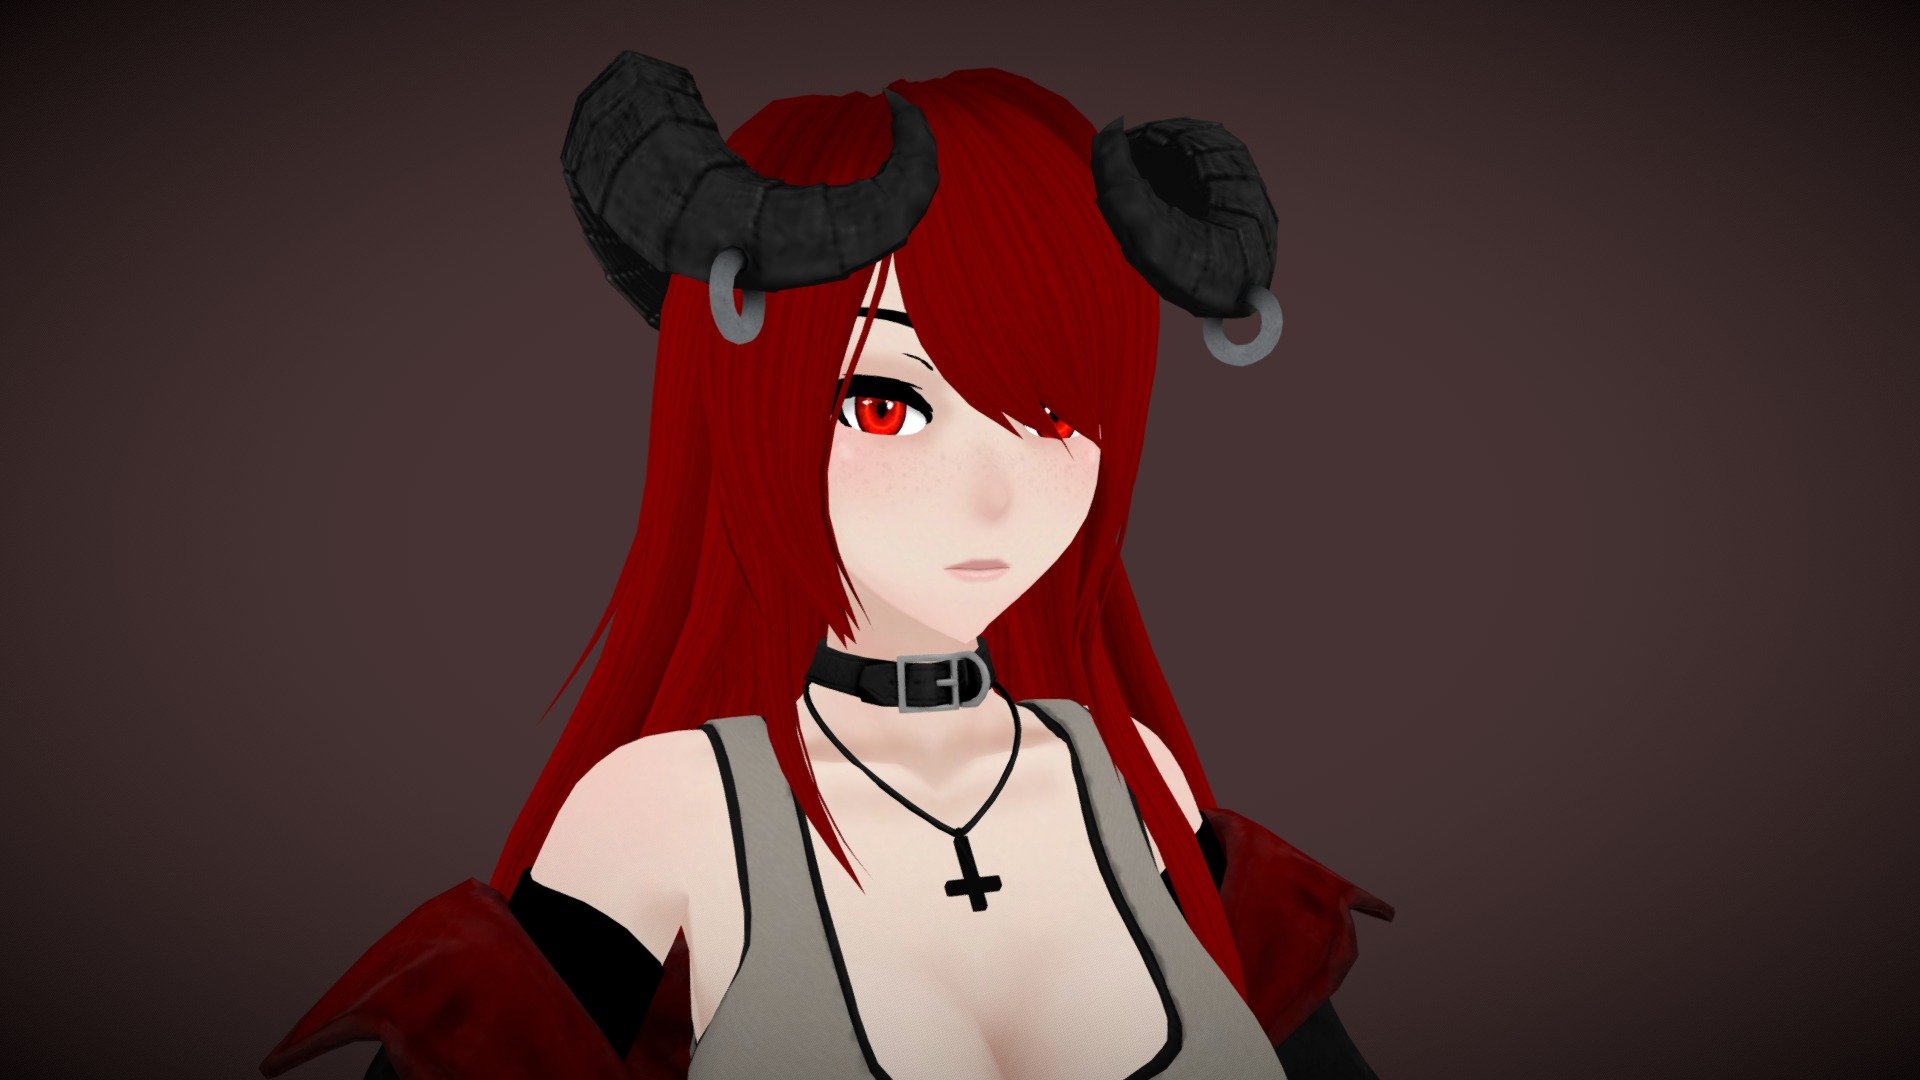 Red-Haired Demon Girl VRChat Avatar đang là một trong những nhân vật đang được yêu thích và săn đón nhiều nhất trong thế giới ảo VRChat. Hãy sở hữu cho mình một nhân vật đầy uy nghi và hấp dẫn trong trò chơi này để cùng khám phá và trải nghiệm những điều mới mẻ.